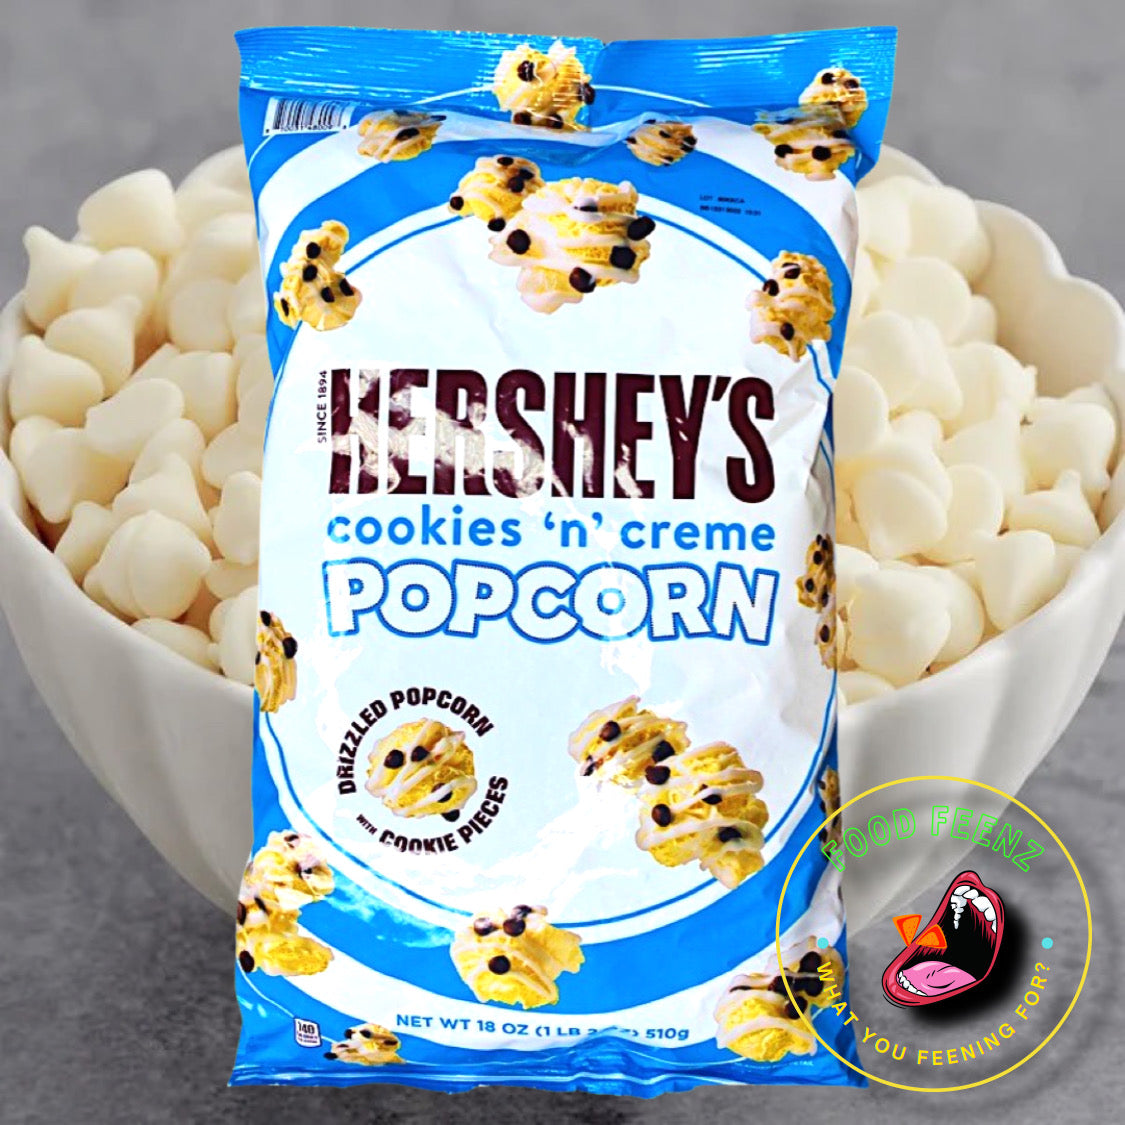 Hershey's Cookies & Creme Popcorn (HUGE BAG)